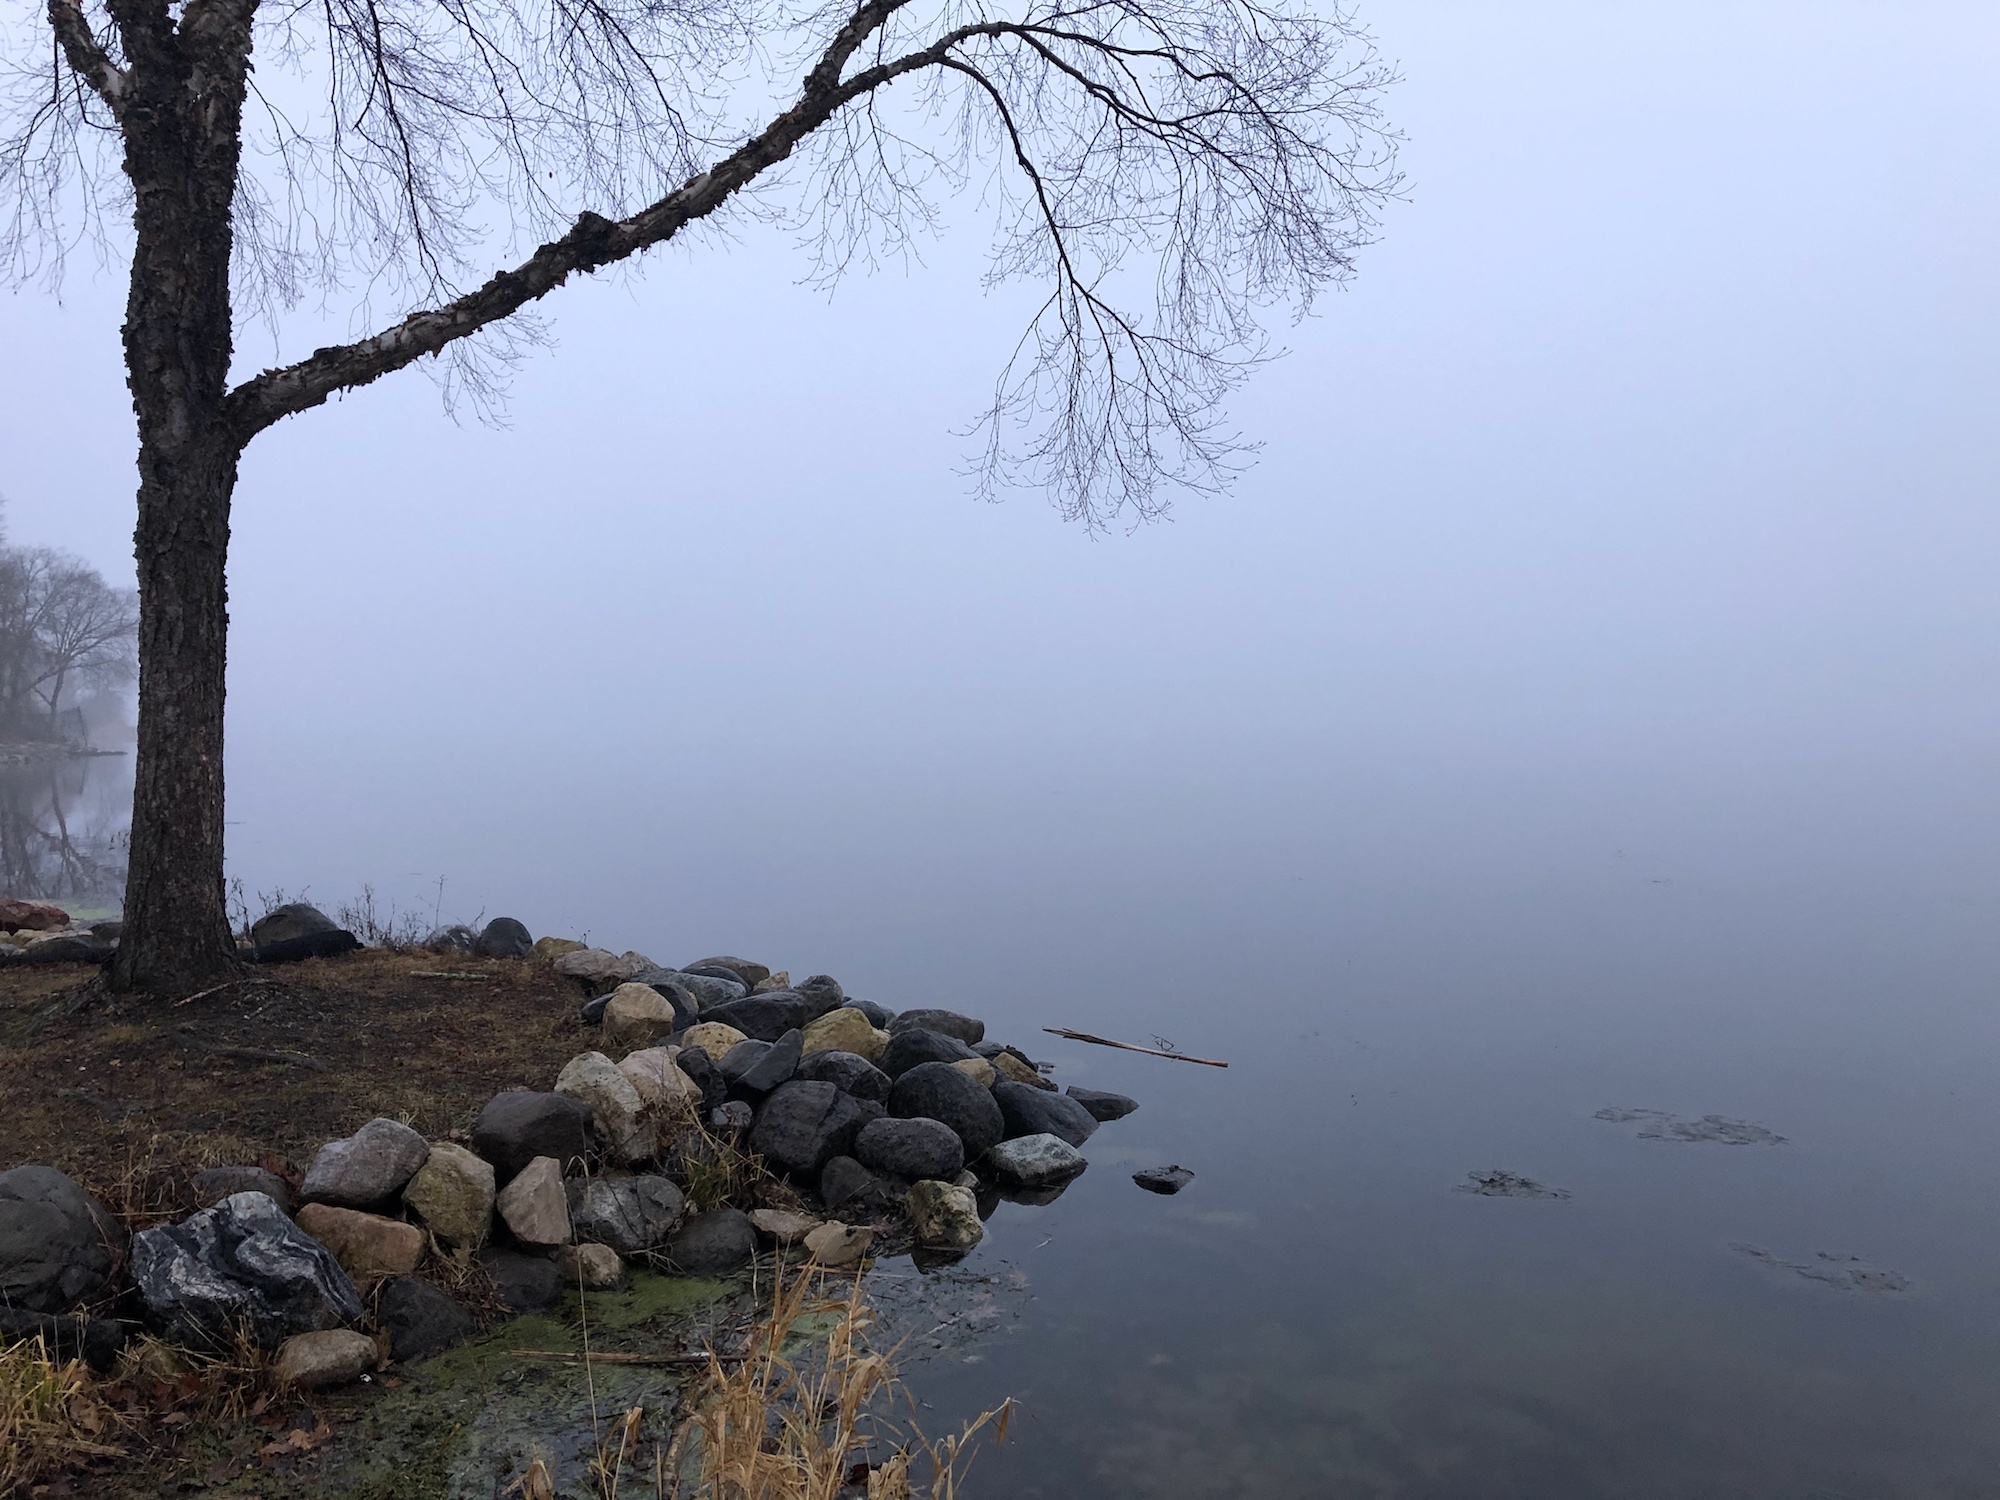 Lake Wingra on December 9, 2019.